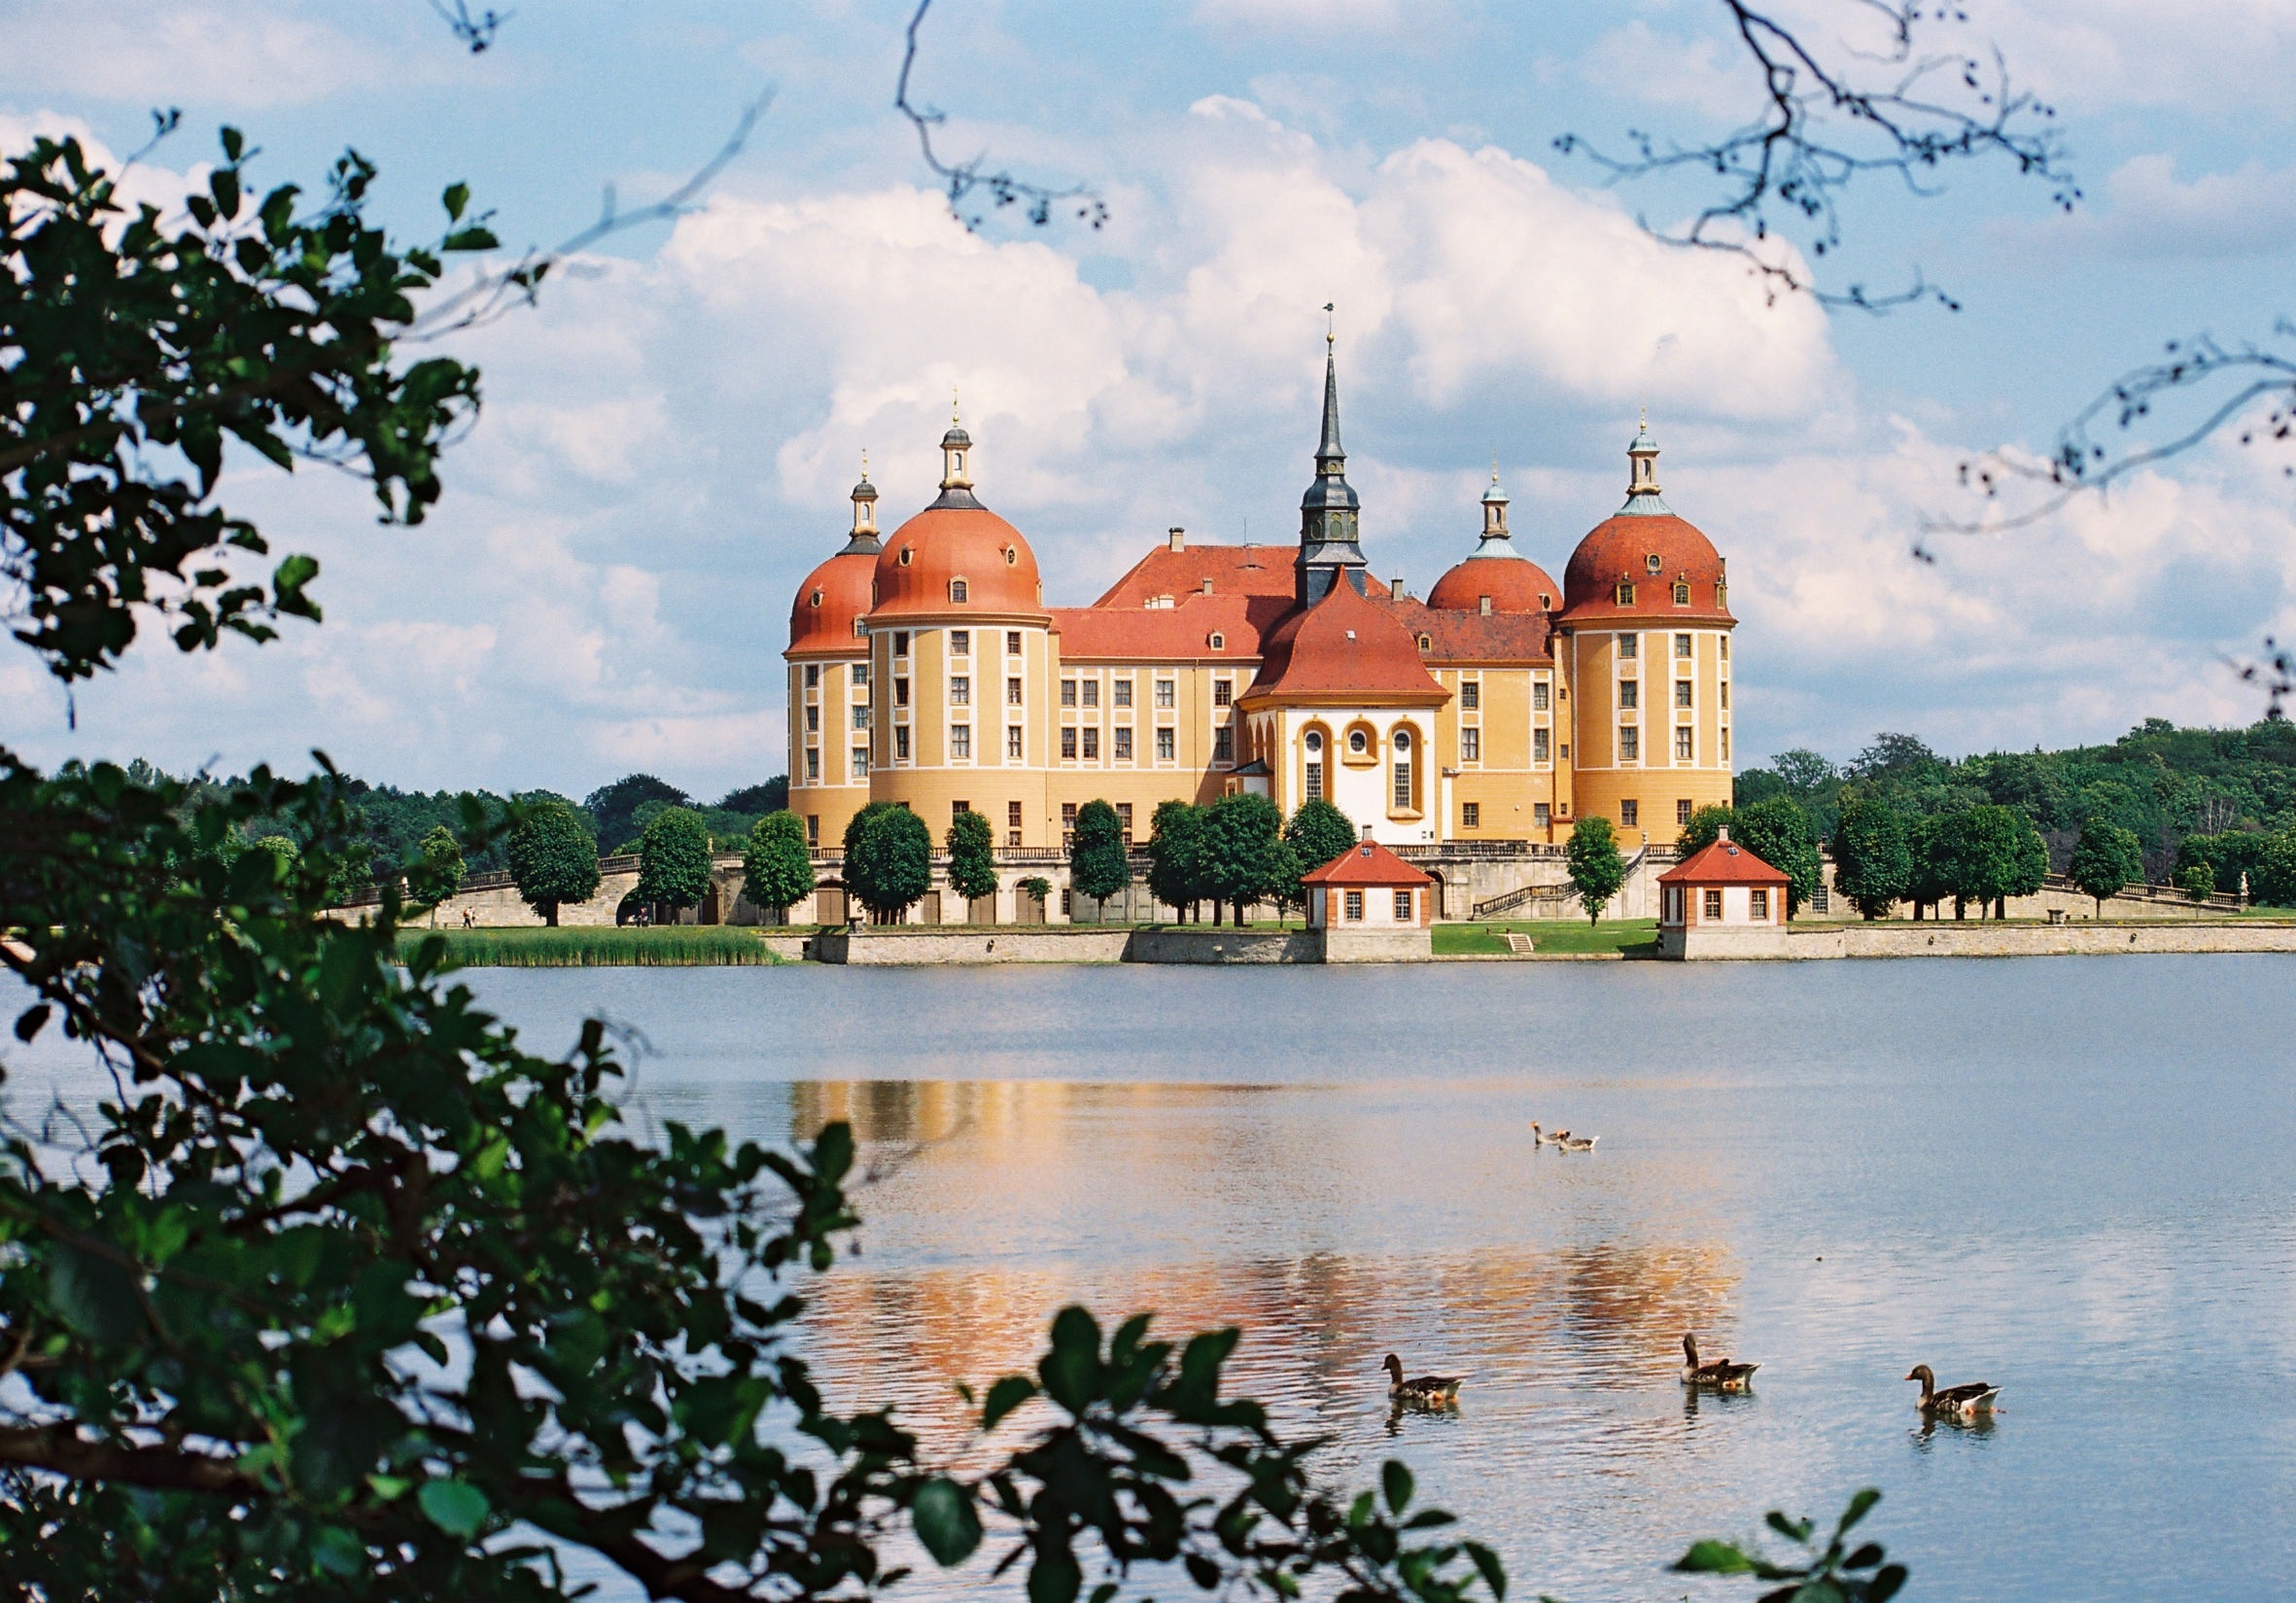 Schloss Moritzburg.
